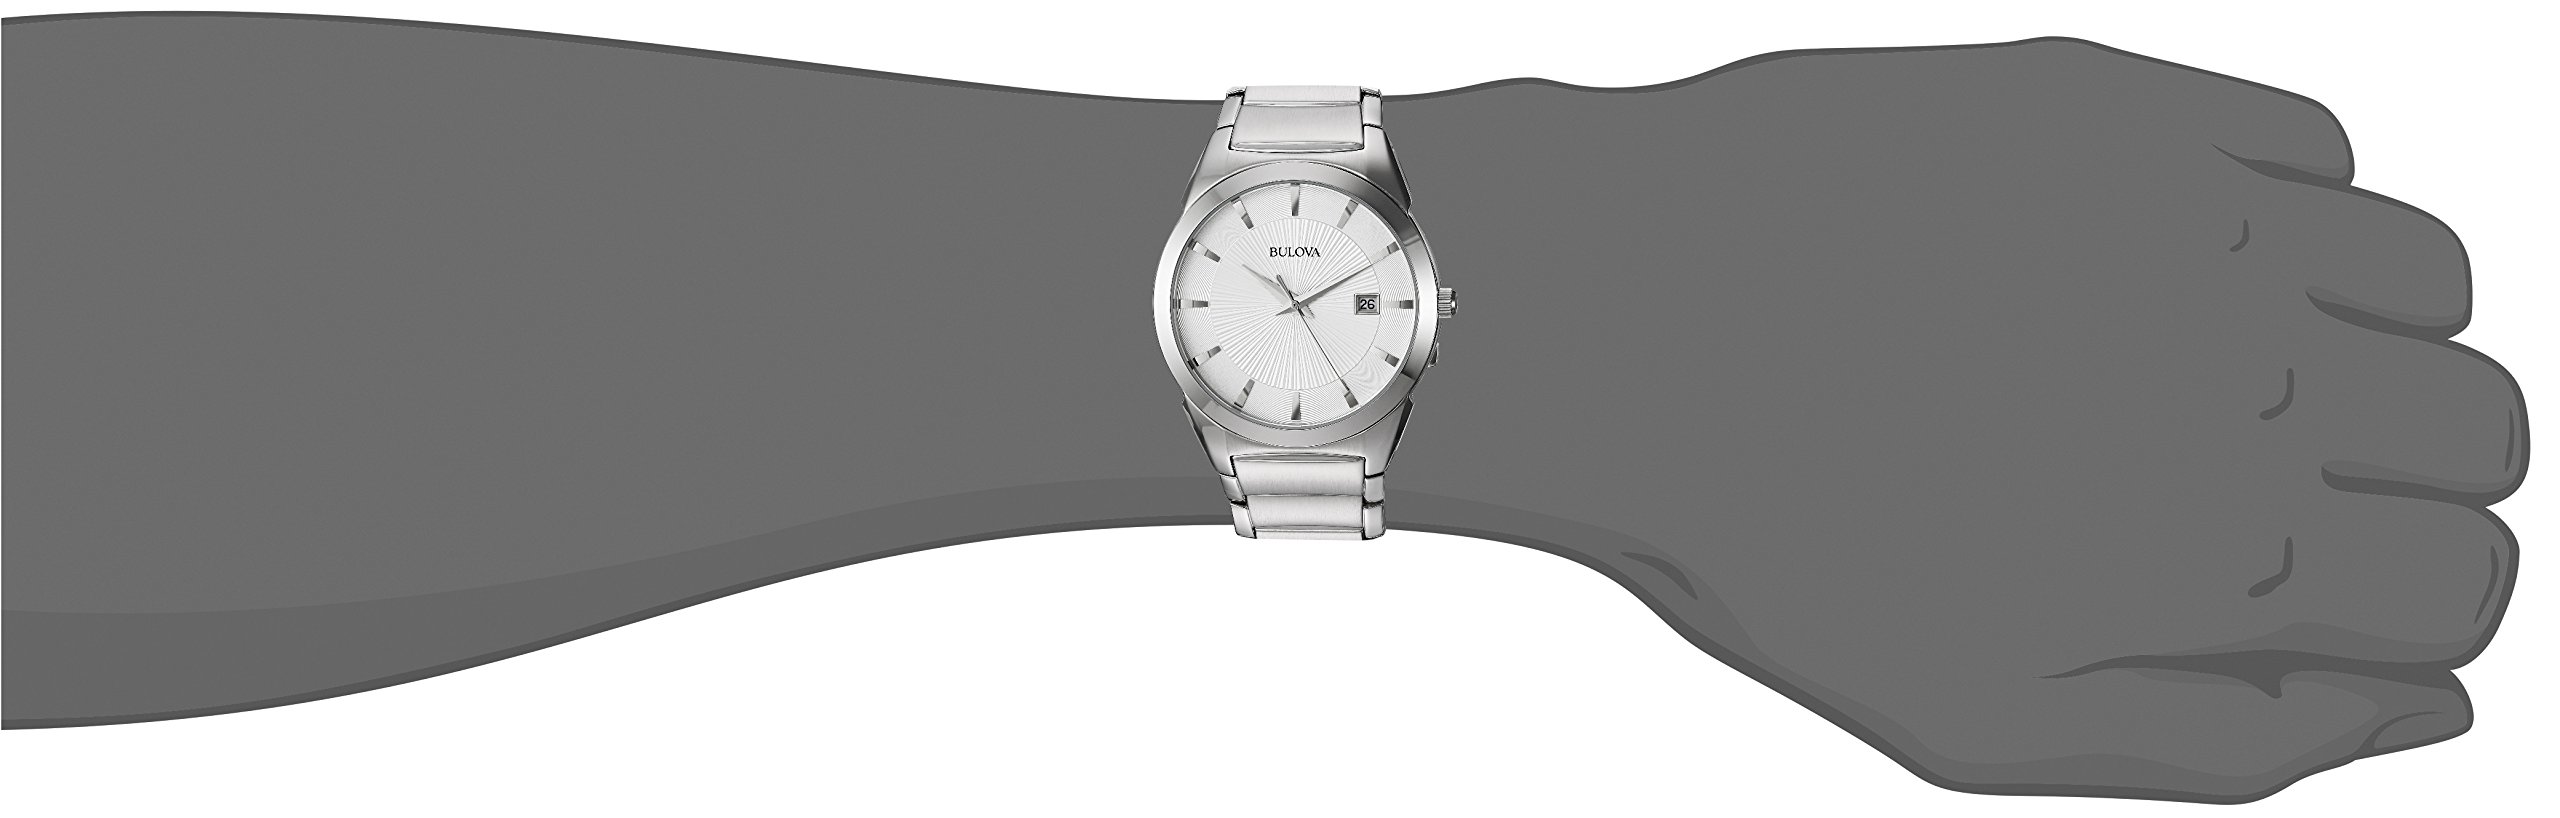 Bulova Men's 3-Hand Calendar Date Quartz Watch, Patterned Dial, 38mm